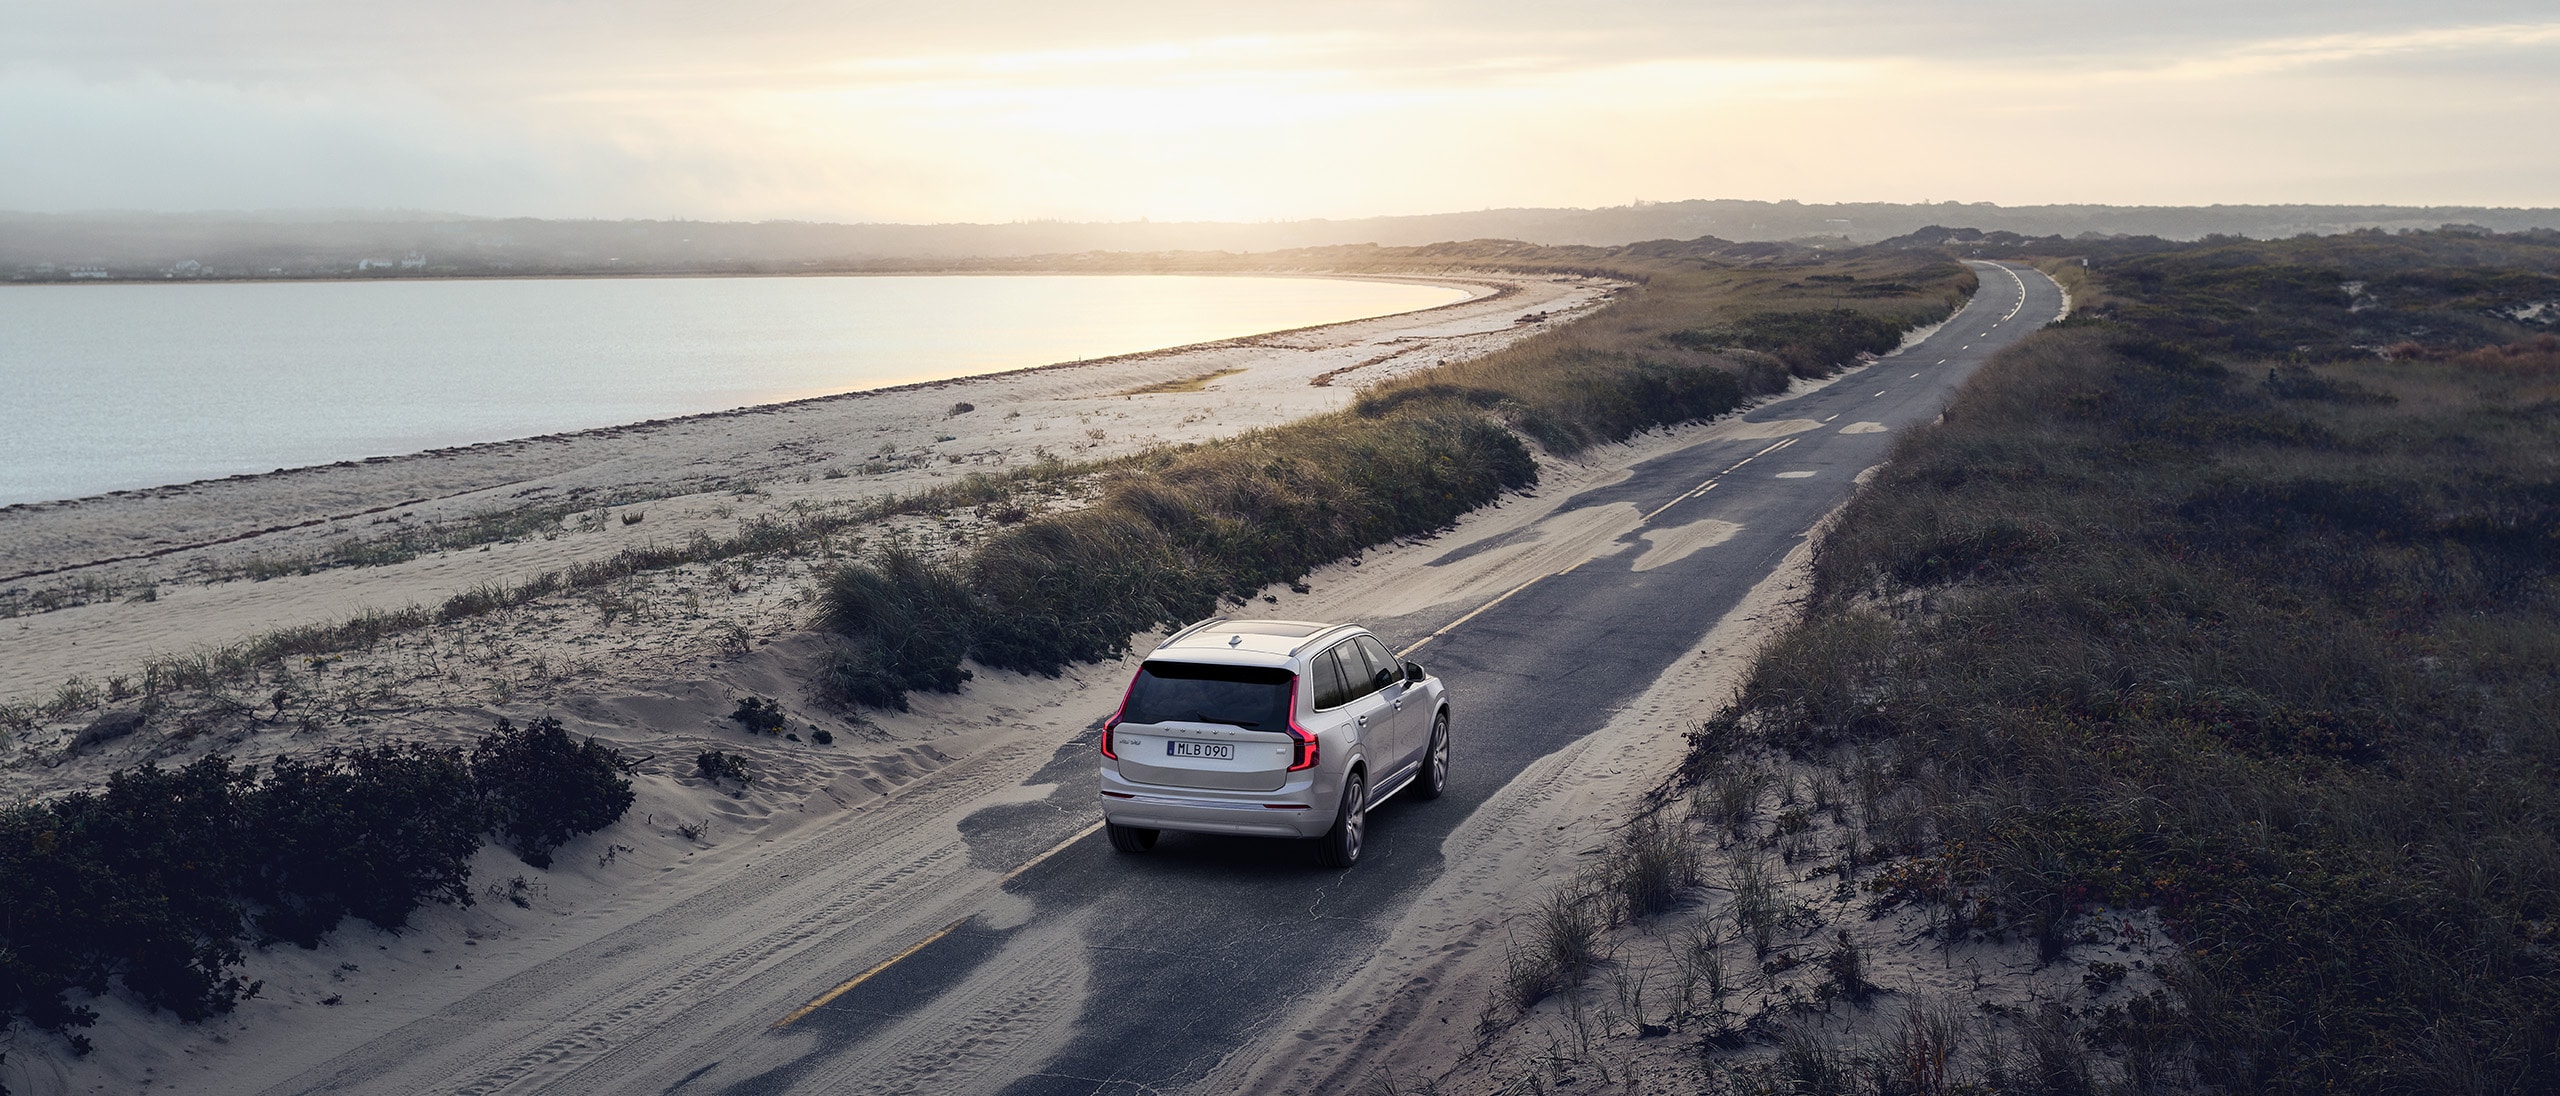 Una Volvo XC60 grigia percorre una strada di campagna circondata da campi aperti all'alba 